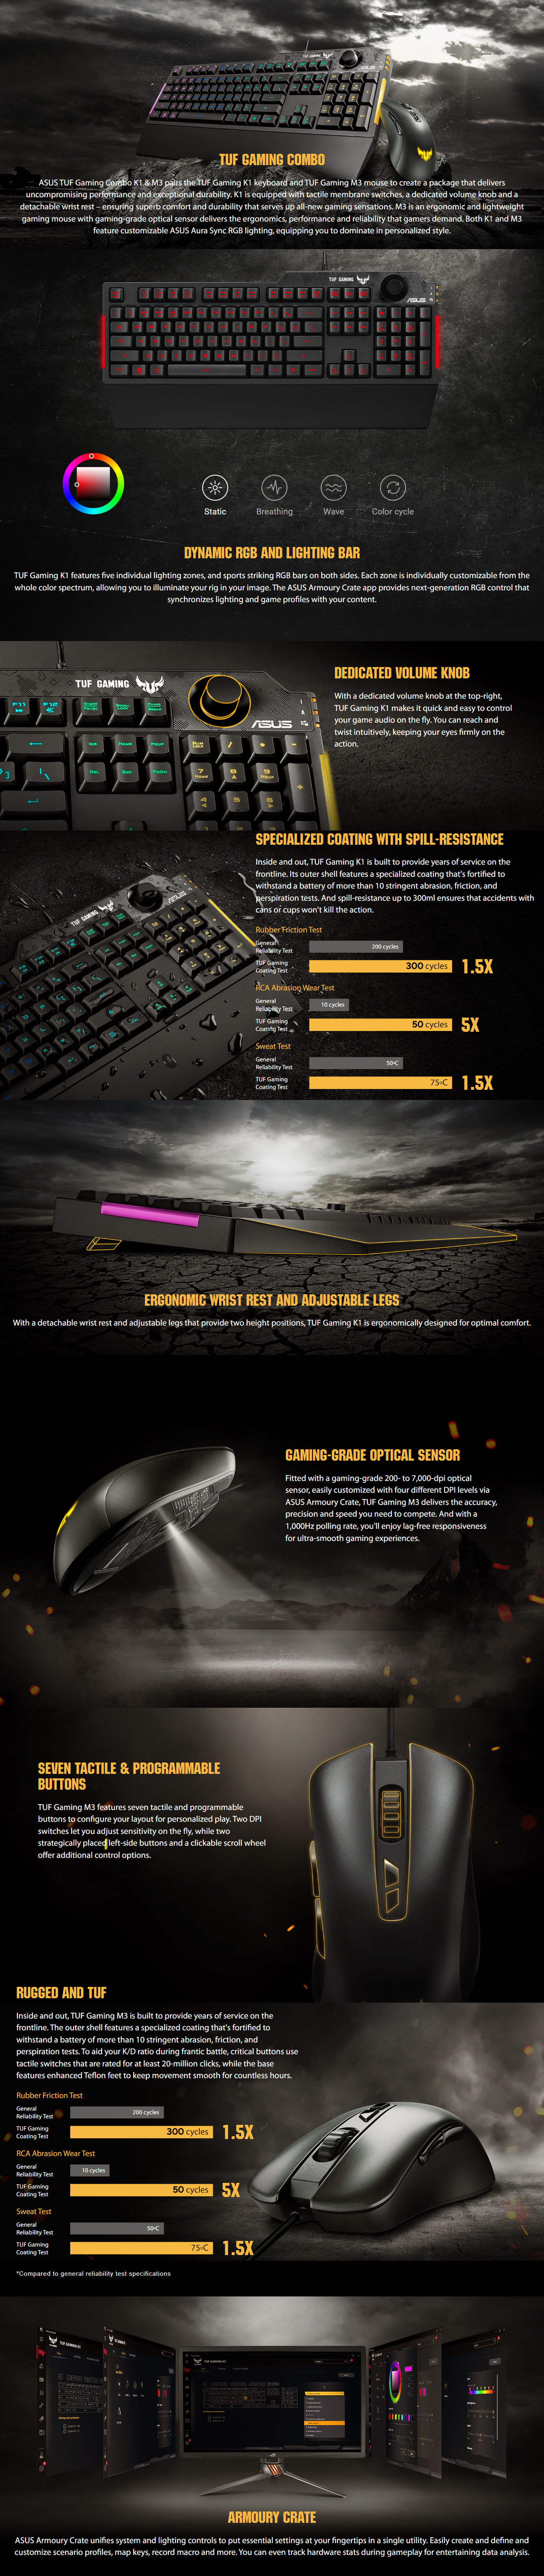 Keyboards-Asus-TUF-Gaming-K1-RGB-Keyboard-and-TUF-Gaming-M3-Optical-Gaming-Mouse-Combo-9